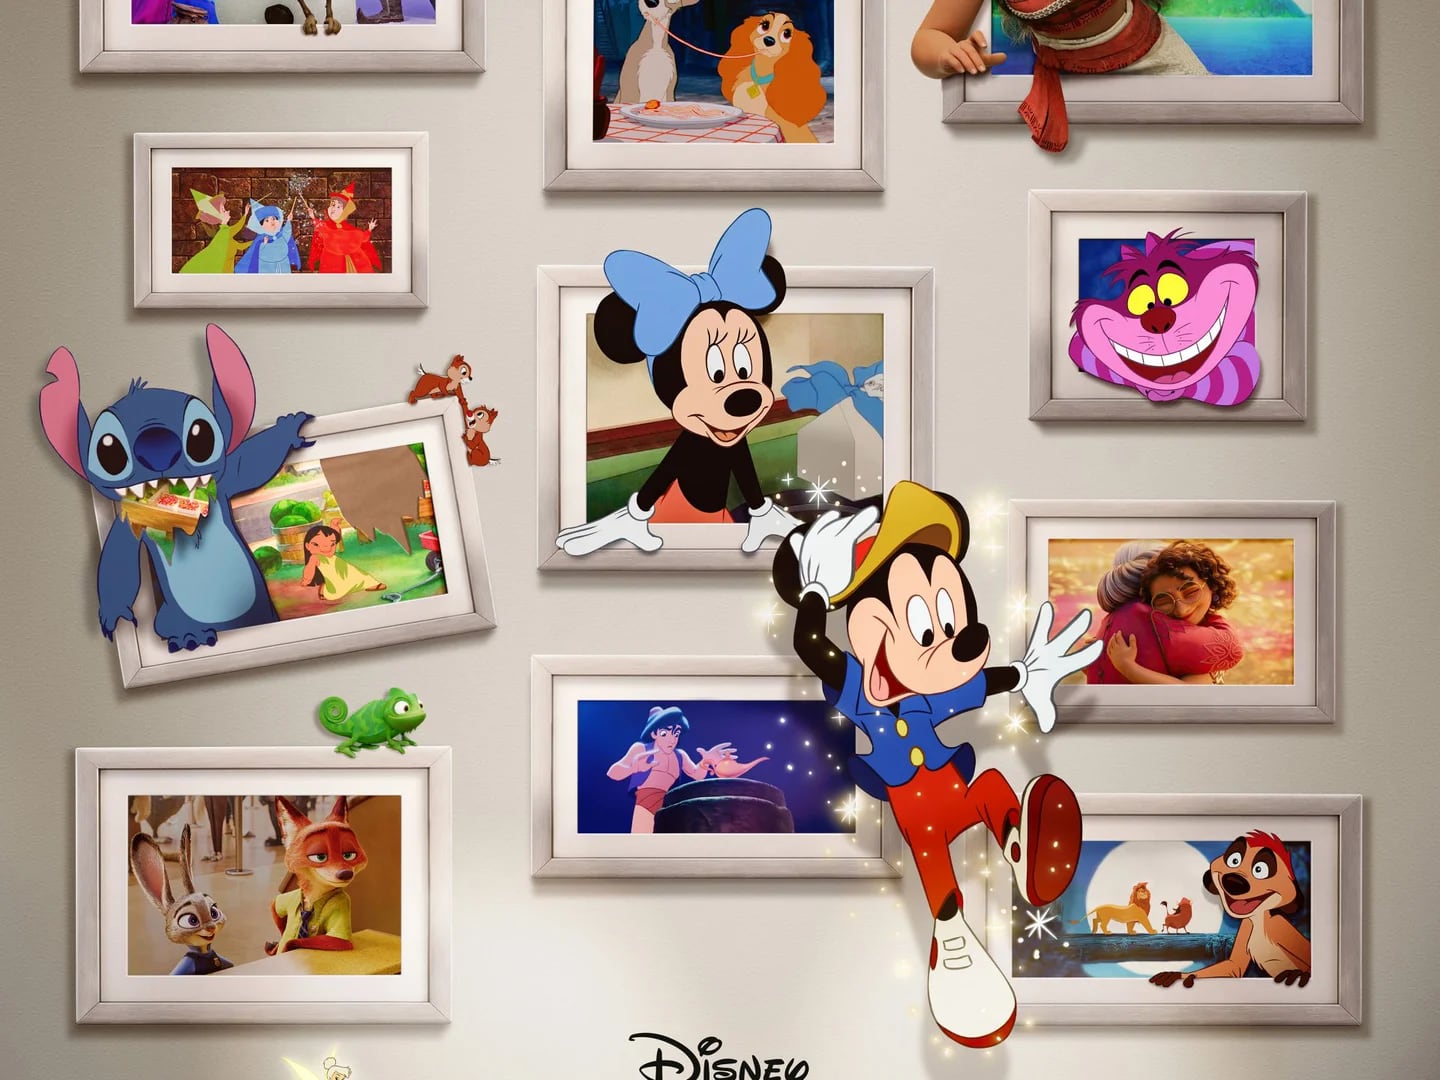 Disney Celebra Su 100 Aniversario Con Érase Una Vez Un Estudio: Un